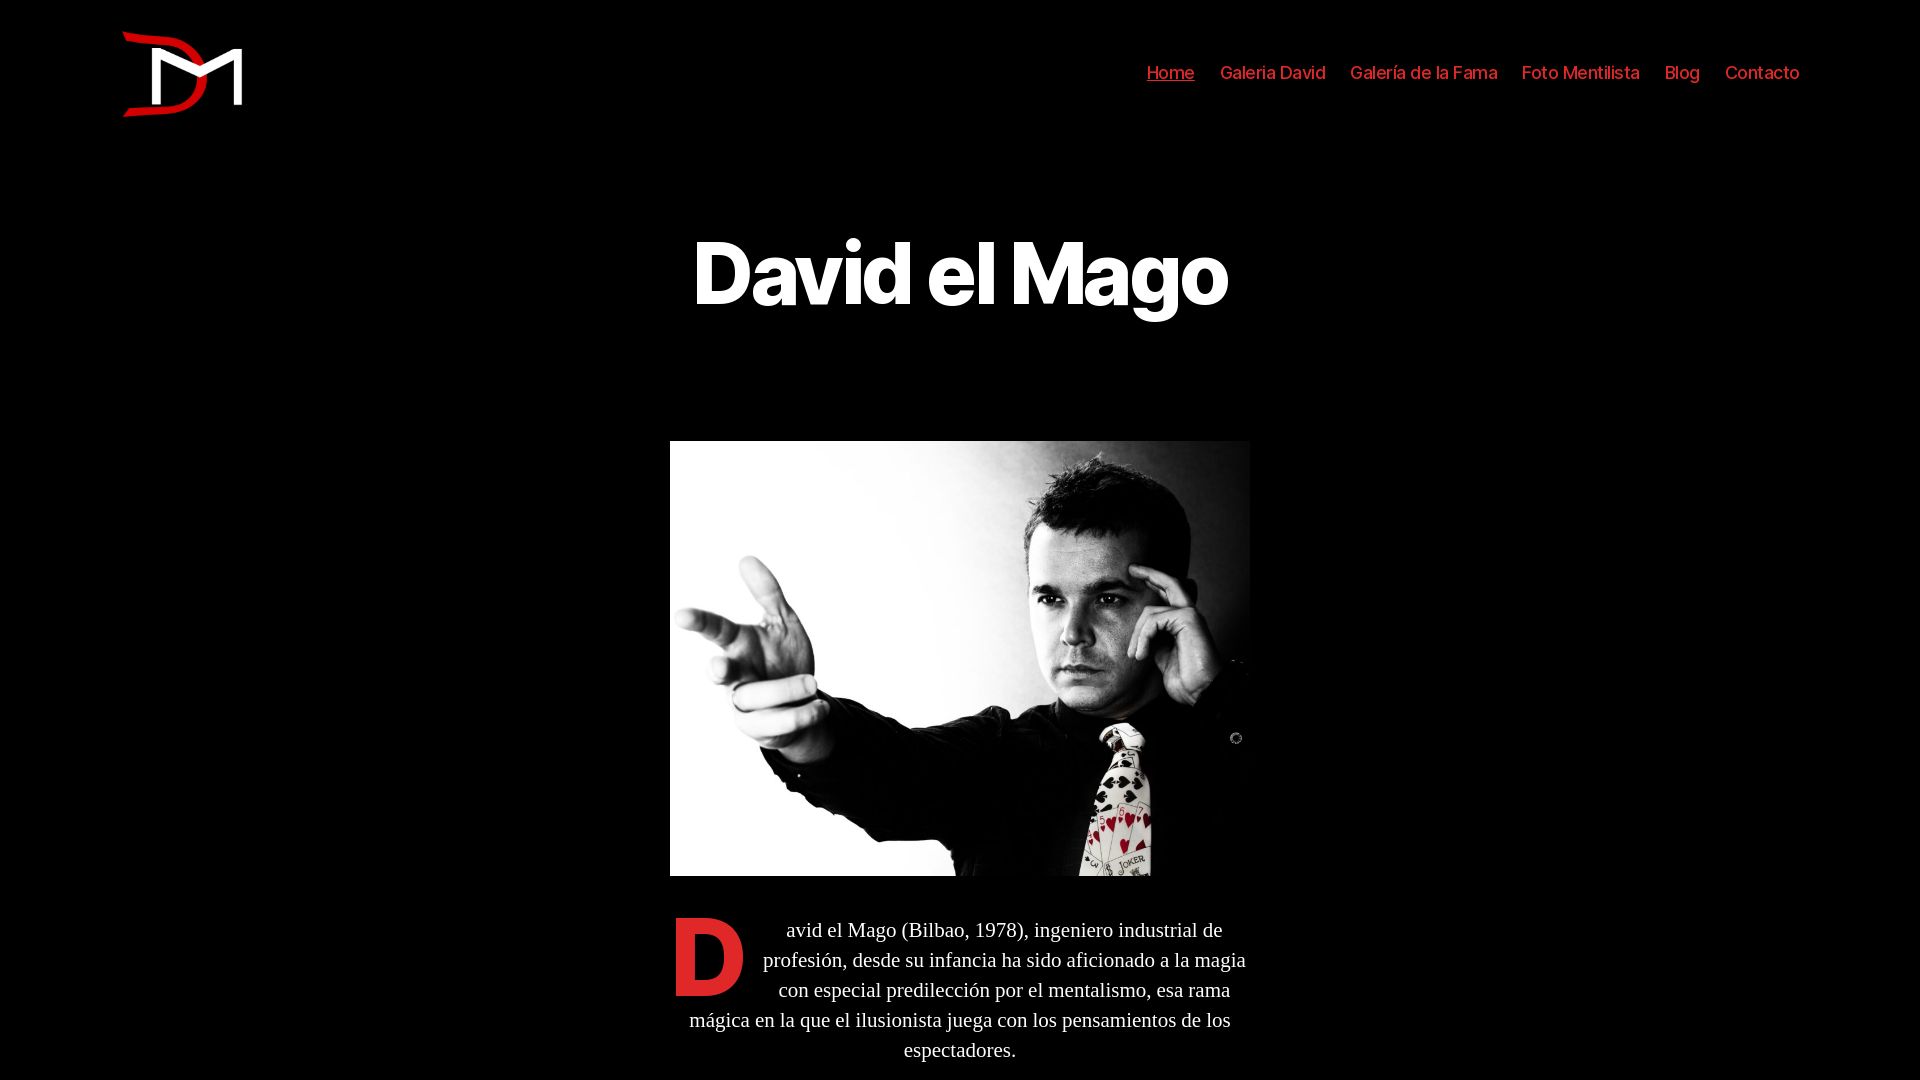 Website status davidmagia.com is   ONLINE